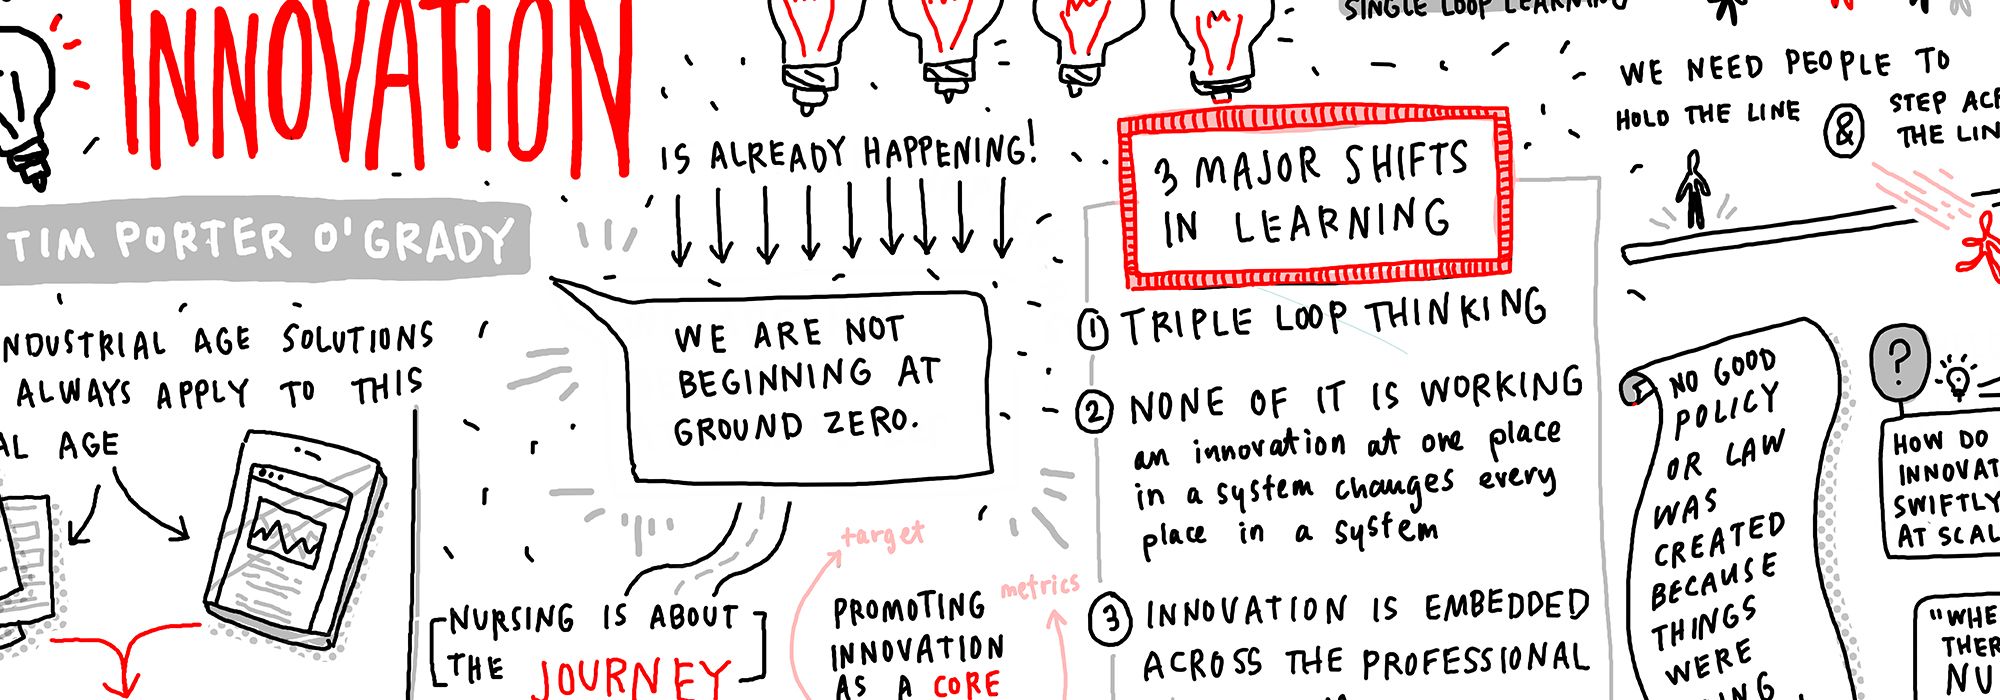 illustration from Innovation Summit